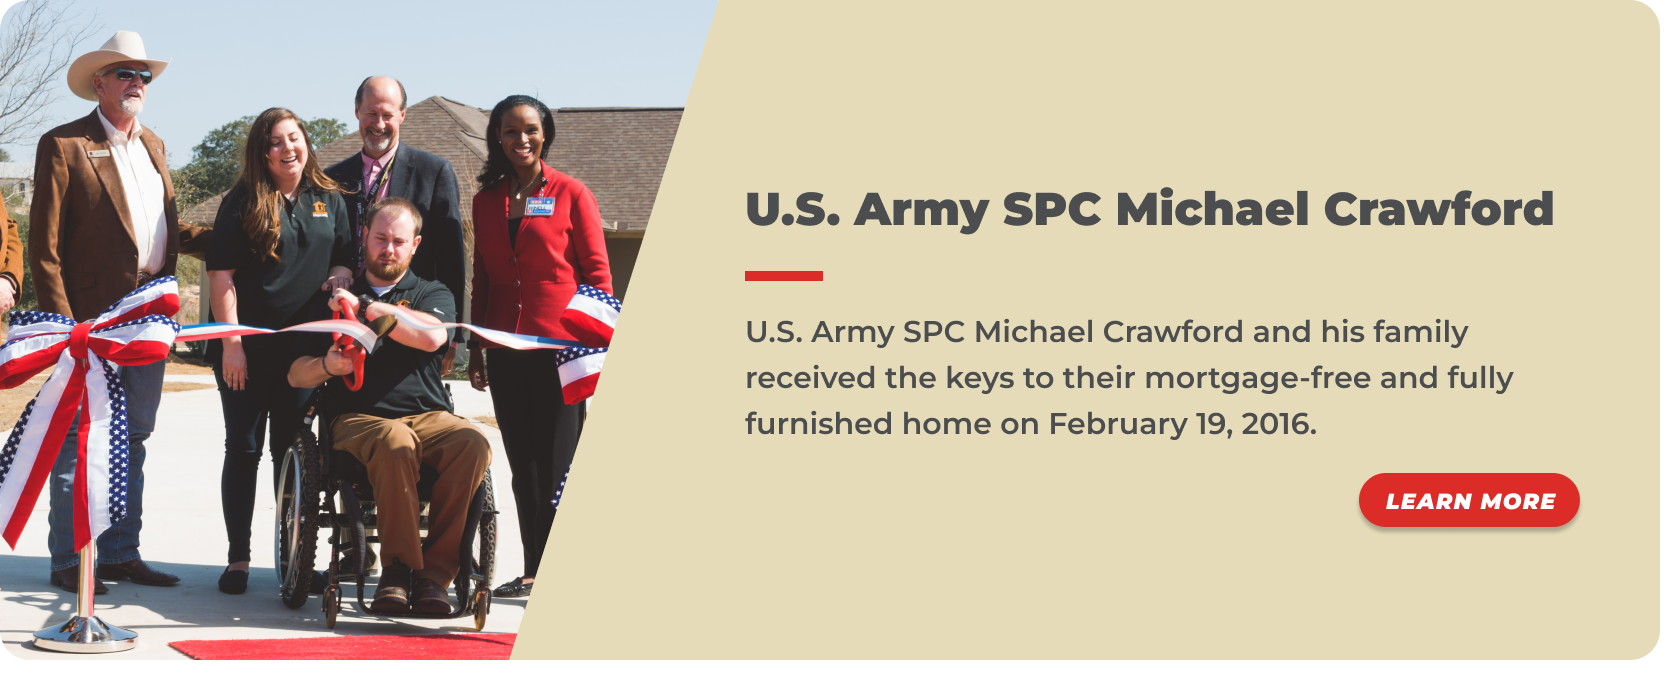 10 -U.S. Army SPC Michael Crawford